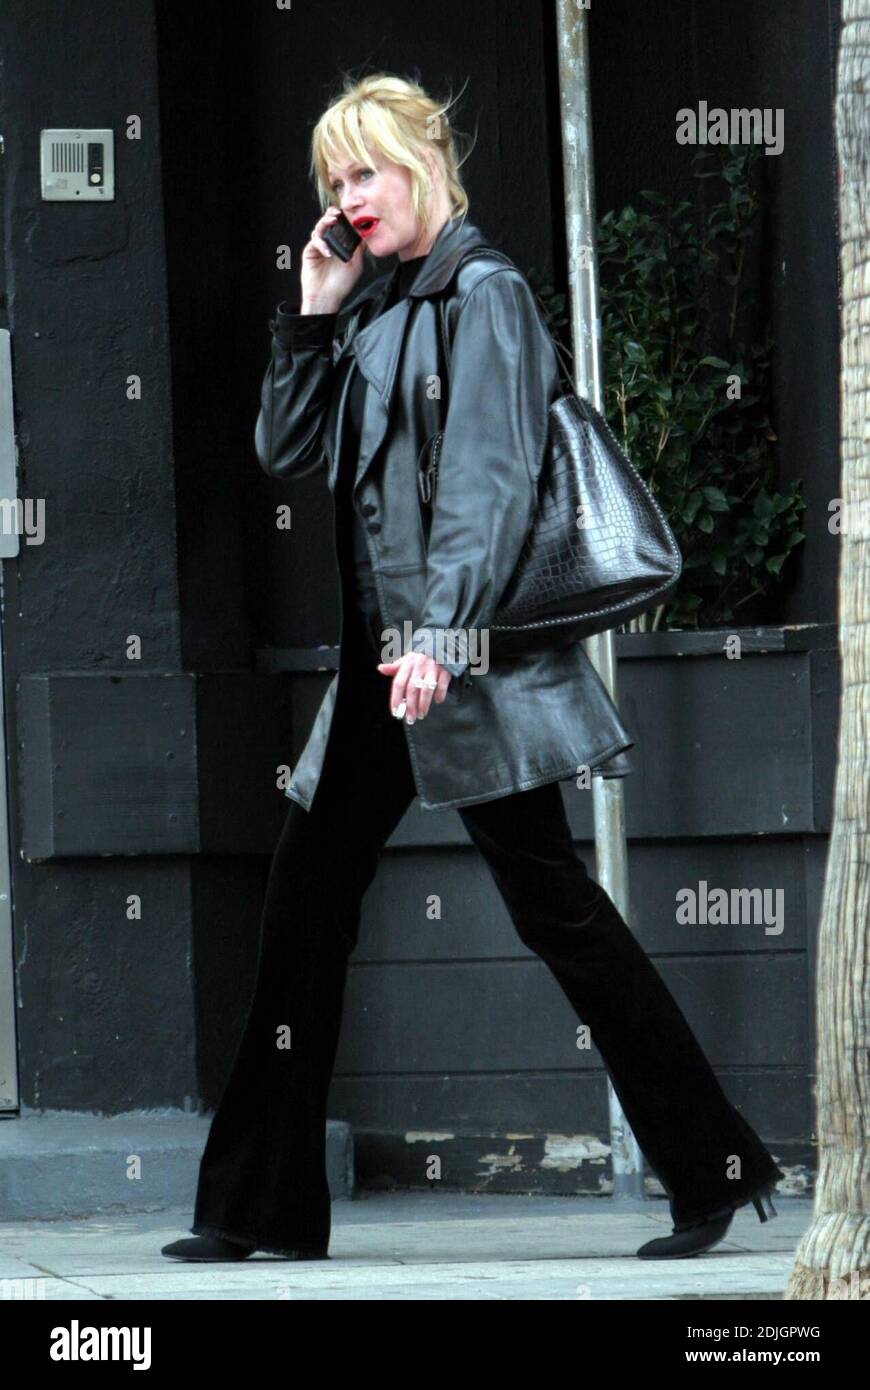 Exclusif !! Melanie Griffith semblait visiblement contrariée lorsqu'elle bavardait sur son téléphone en route vers sa réunion AA régulière à West Hollywood, Californie. 3/31/06 Banque D'Images